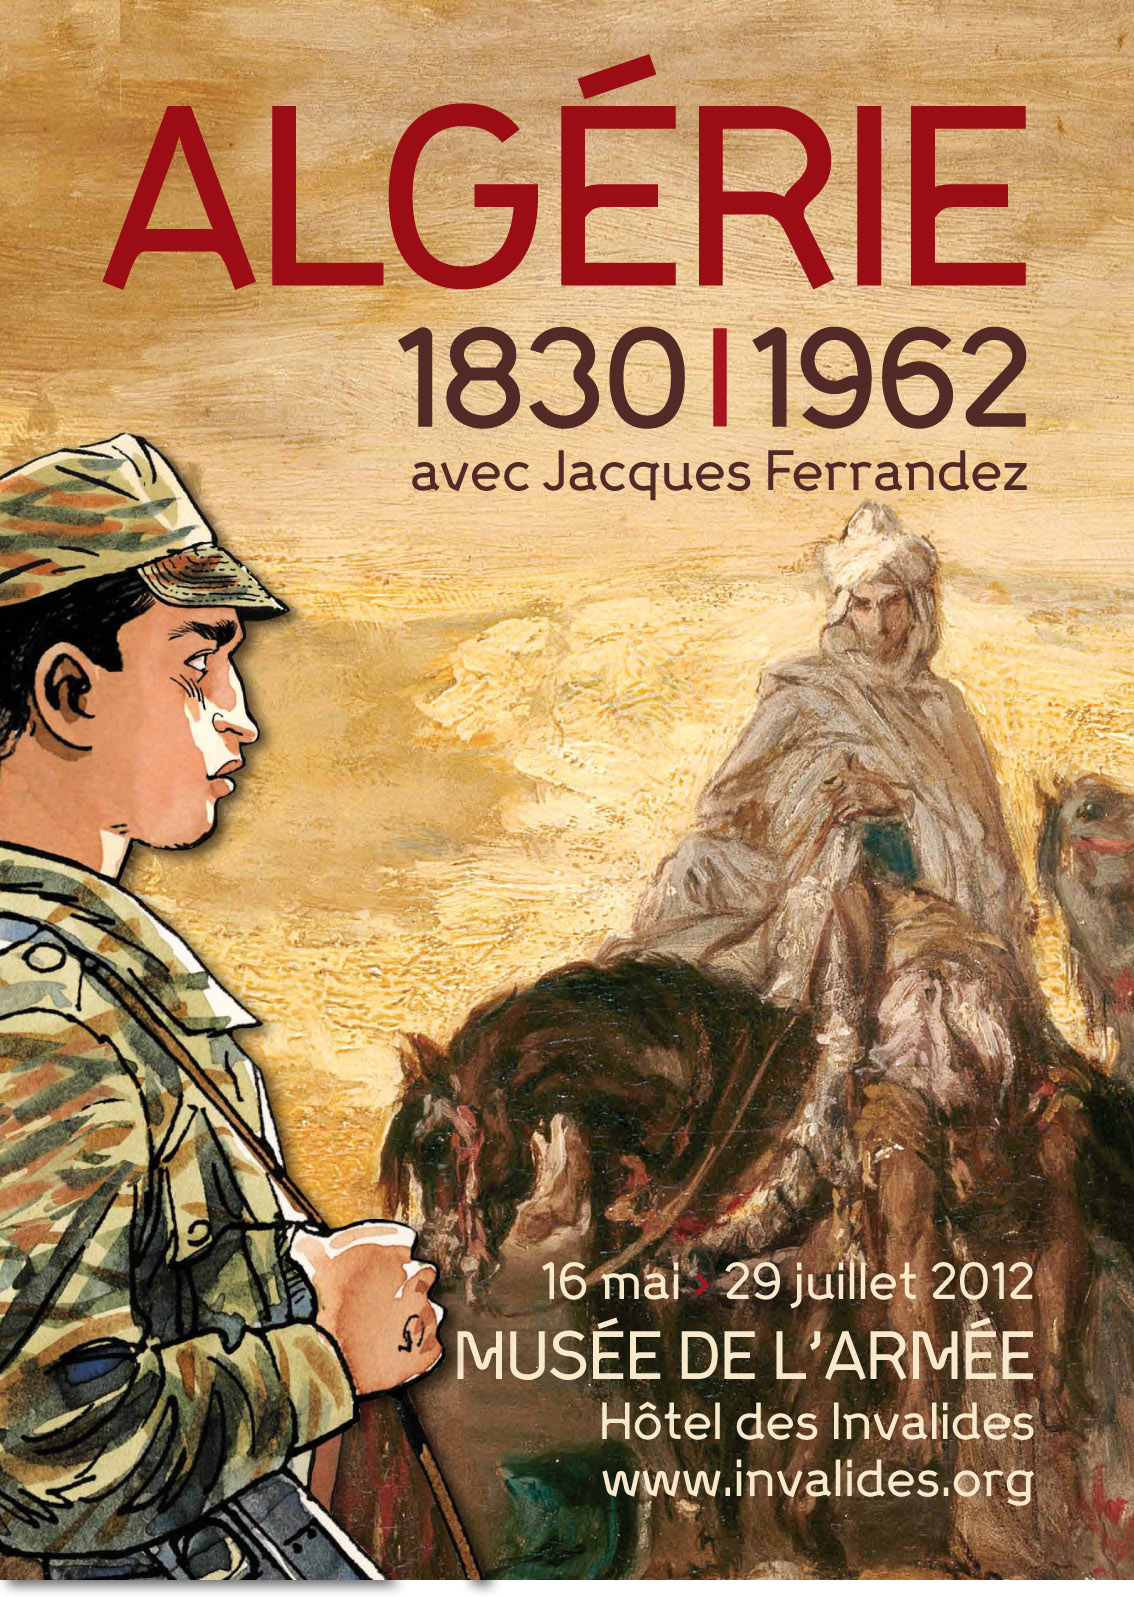 ALGÉRIE 1830-1962 16 mai – 29 juillet 2012 au musée de l’armée